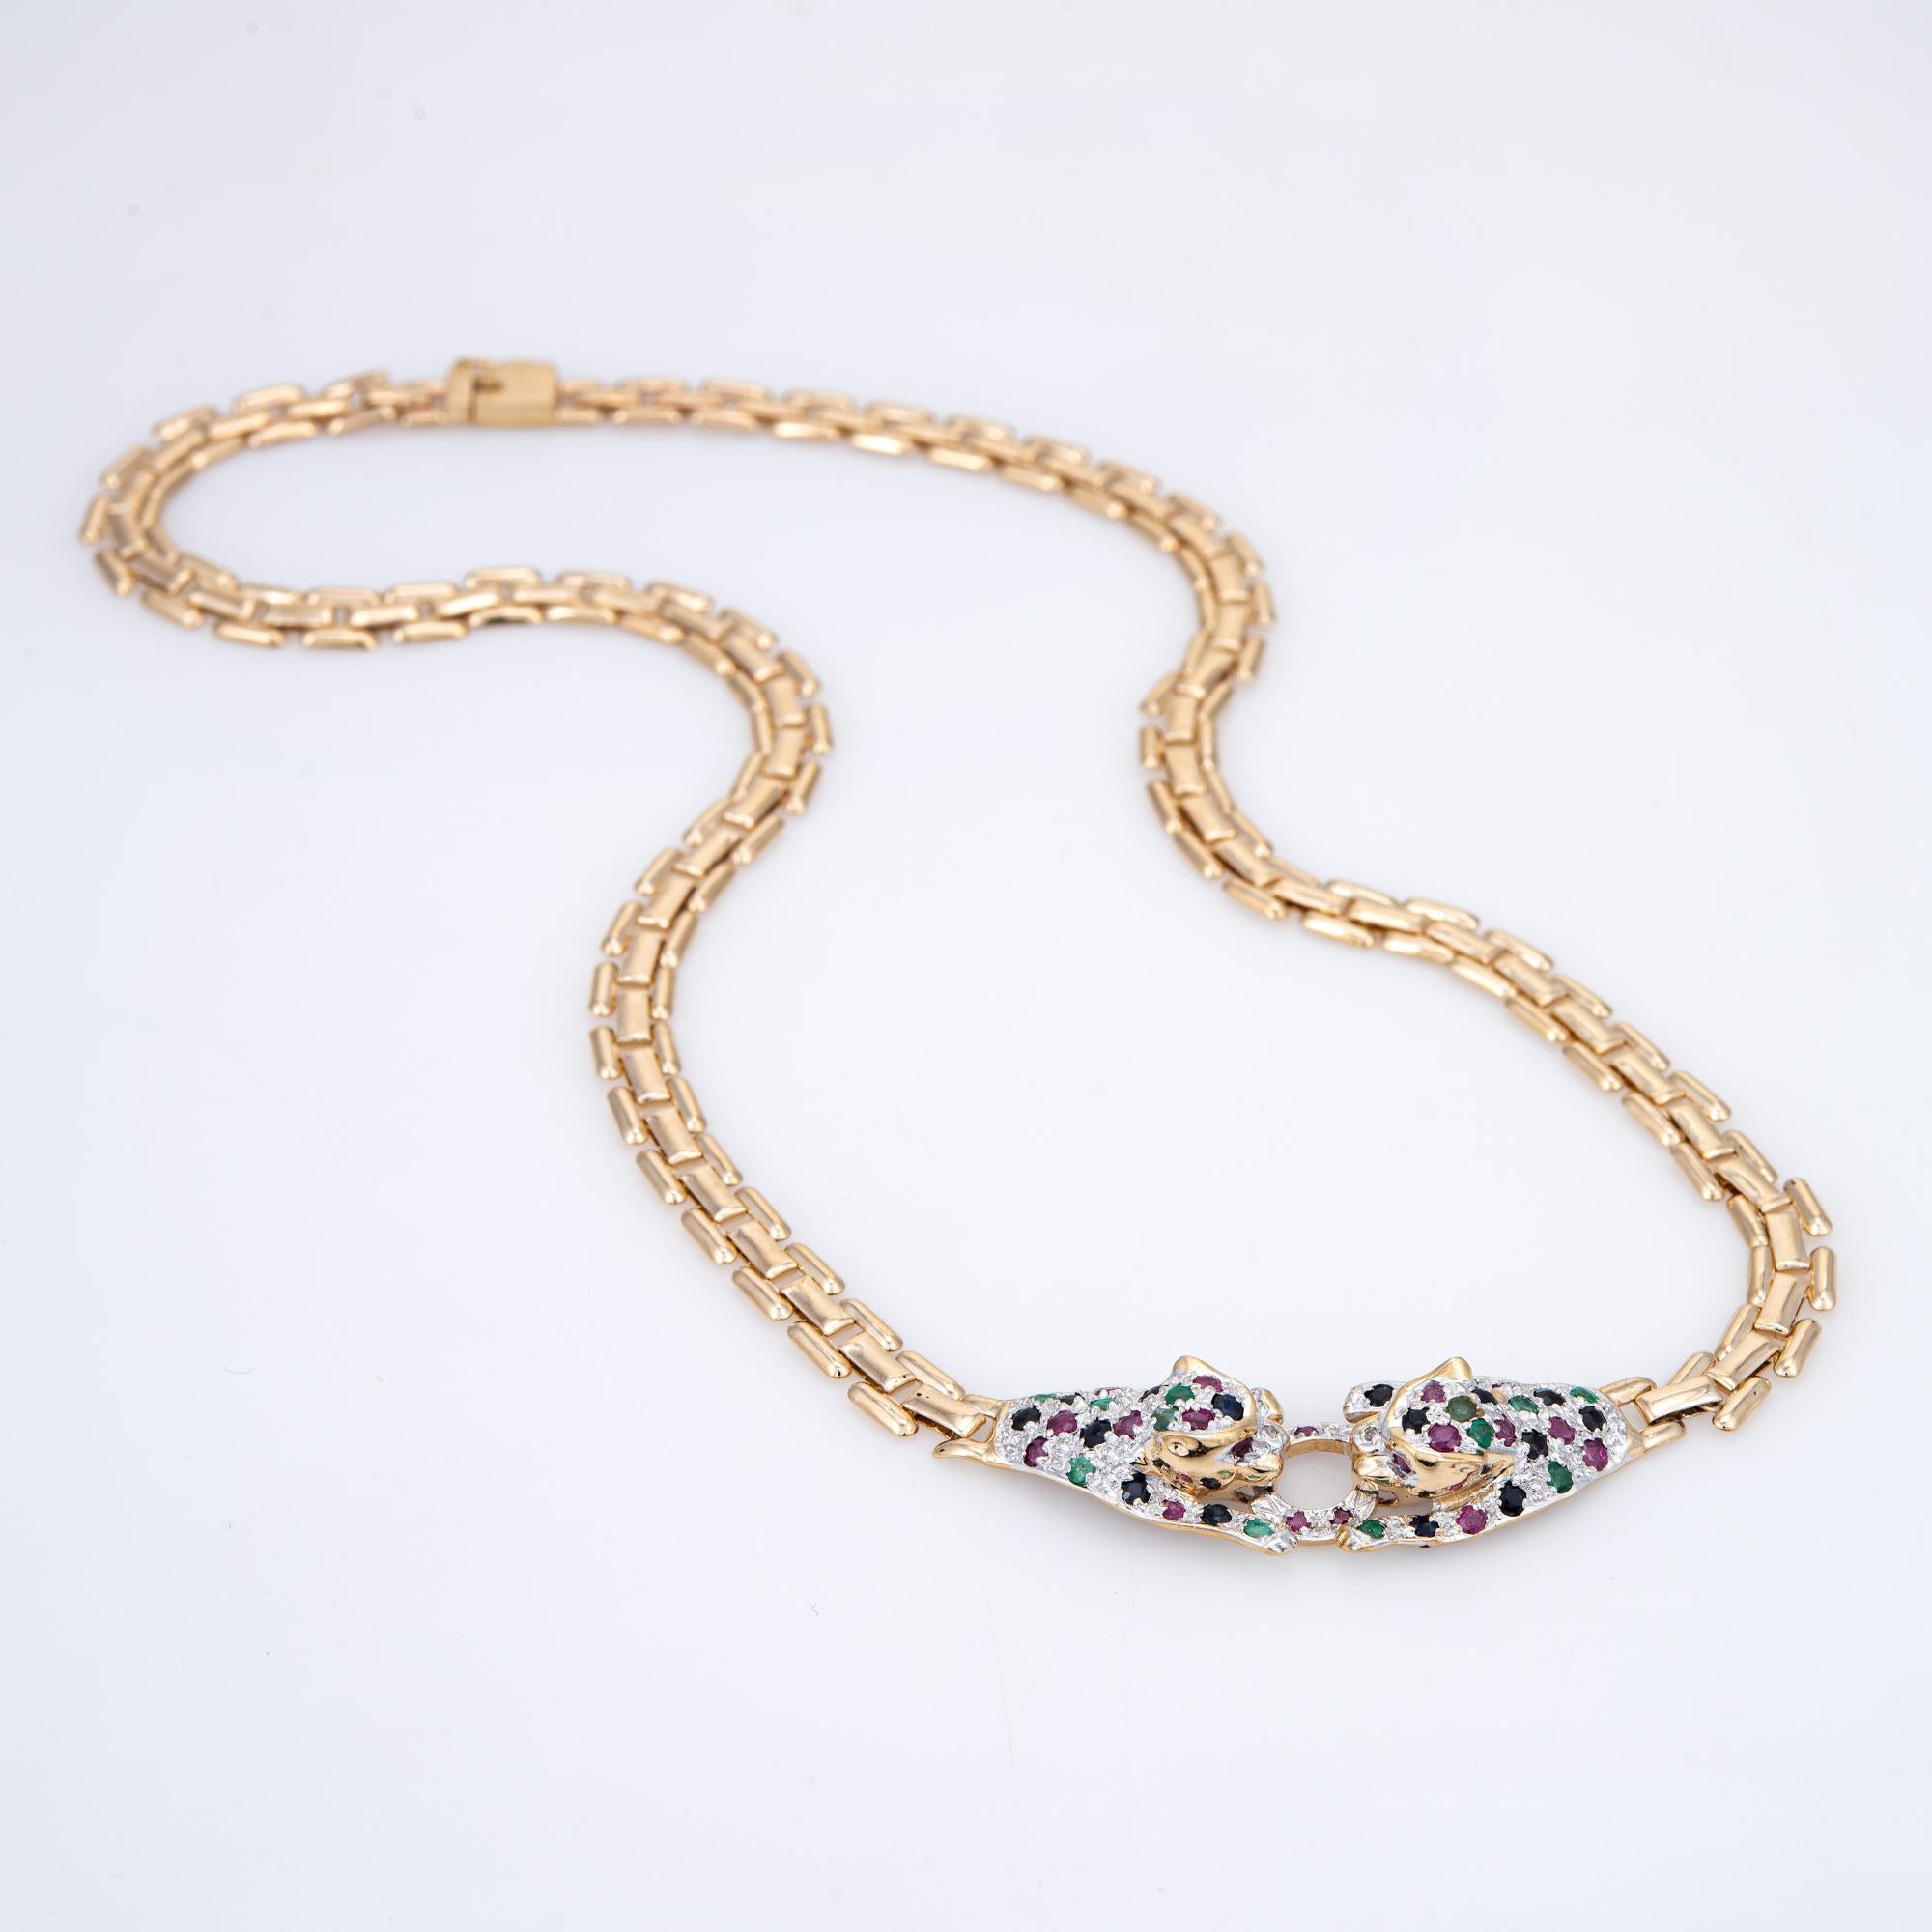 Fein gearbeitete Edelstein-Leoparden-Halskette aus 14-karätigem Gelbgold (ca. 1980er Jahre).  

Saphire, Smaragde und Rubine haben zusammen schätzungsweise 1,50 Karat. Die Edelsteine sind in sehr gutem Zustand und frei von Rissen oder